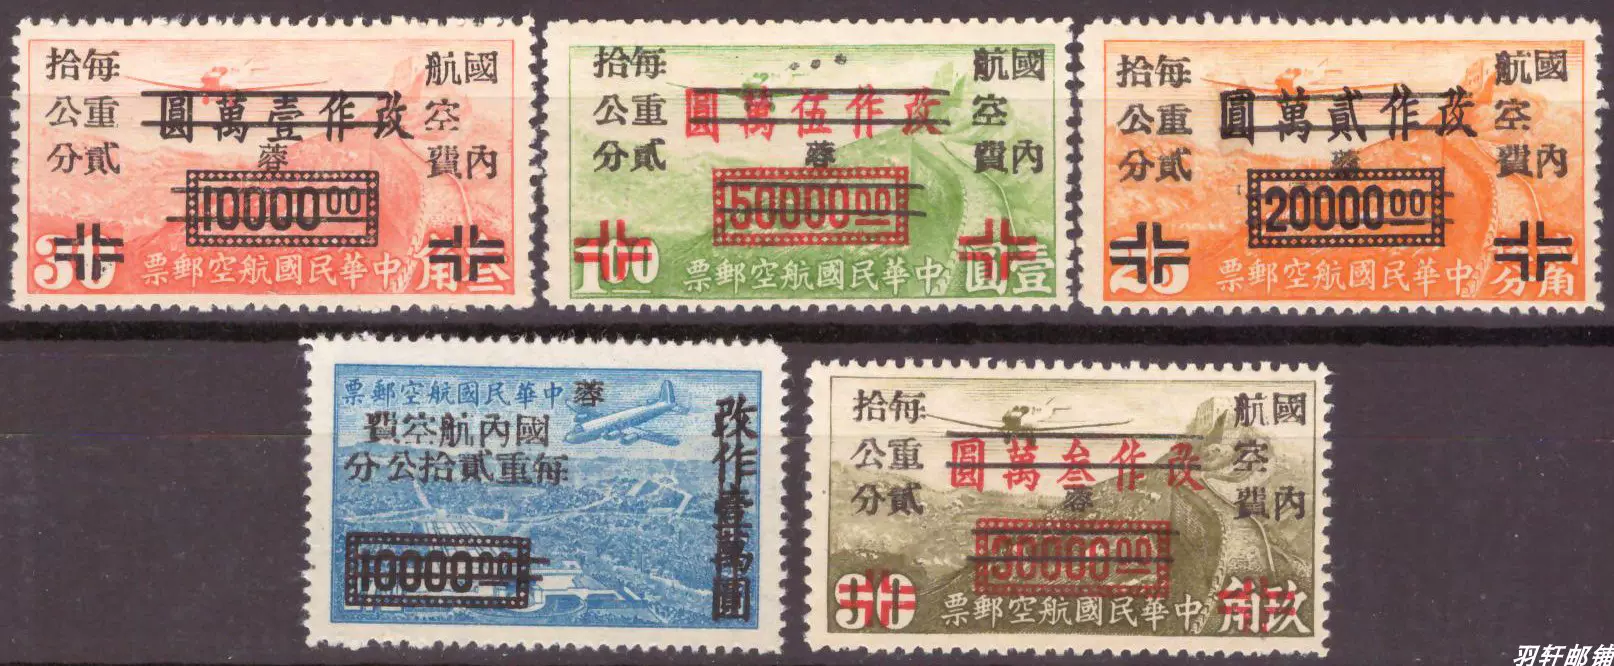 伪蒙疆邮区香港版烈士像无水印,加盖改值,一分,四分四方联各一件-Taobao